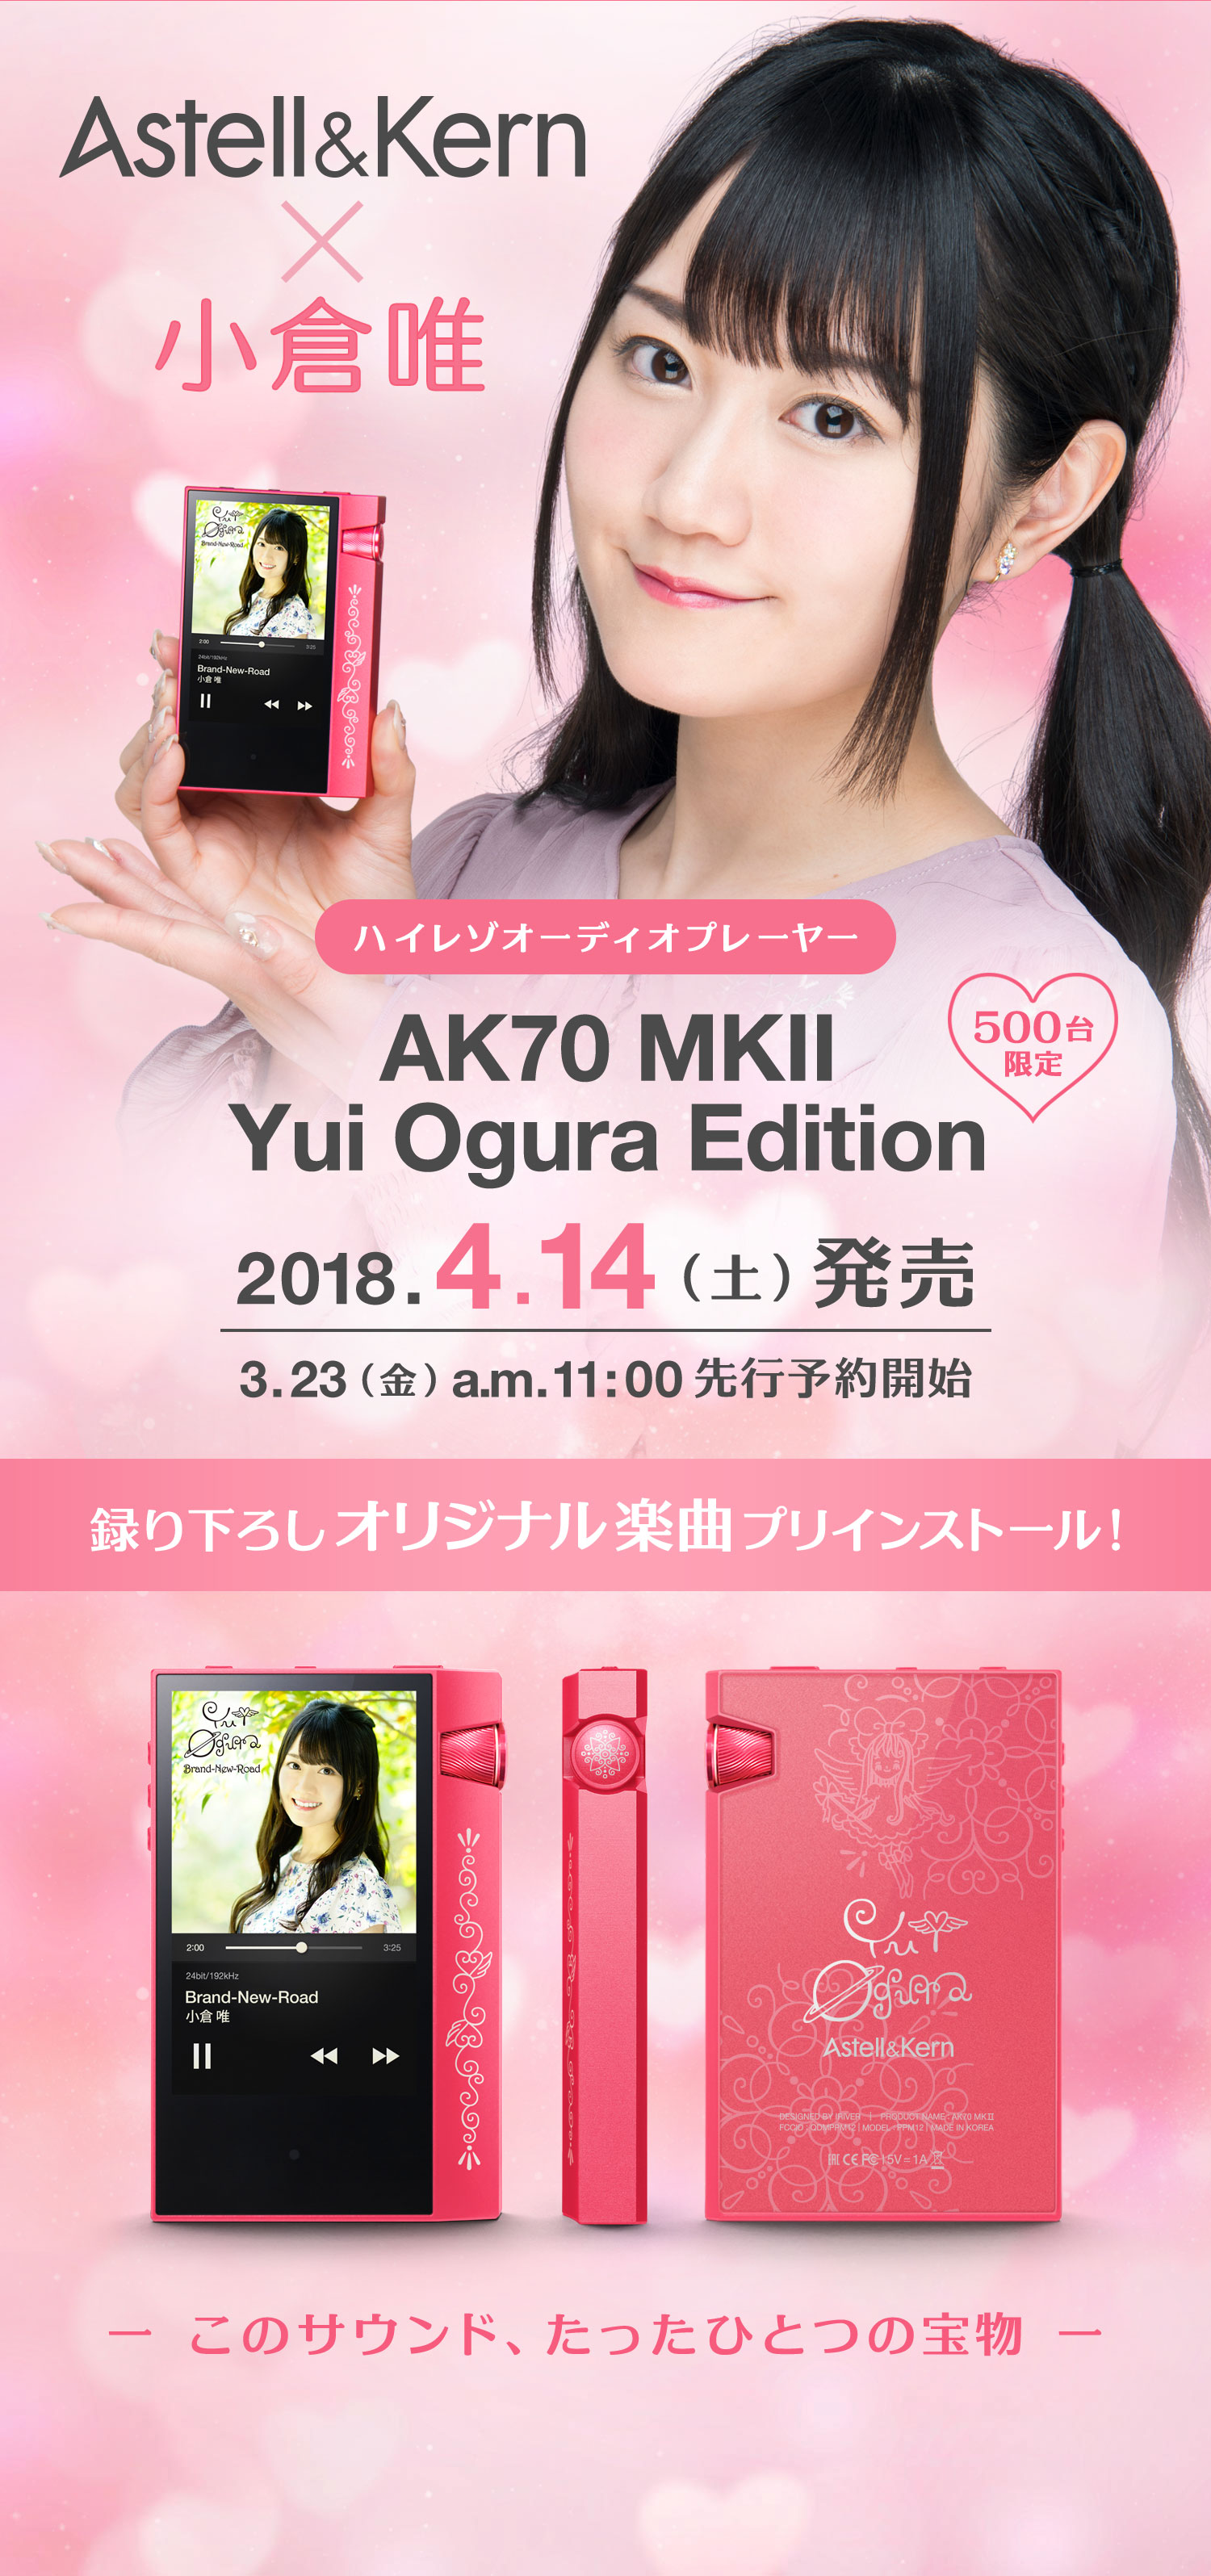 新作揃え AK70 Astell&Kern MKII Edition Ogura Yui ポータブルプレーヤー